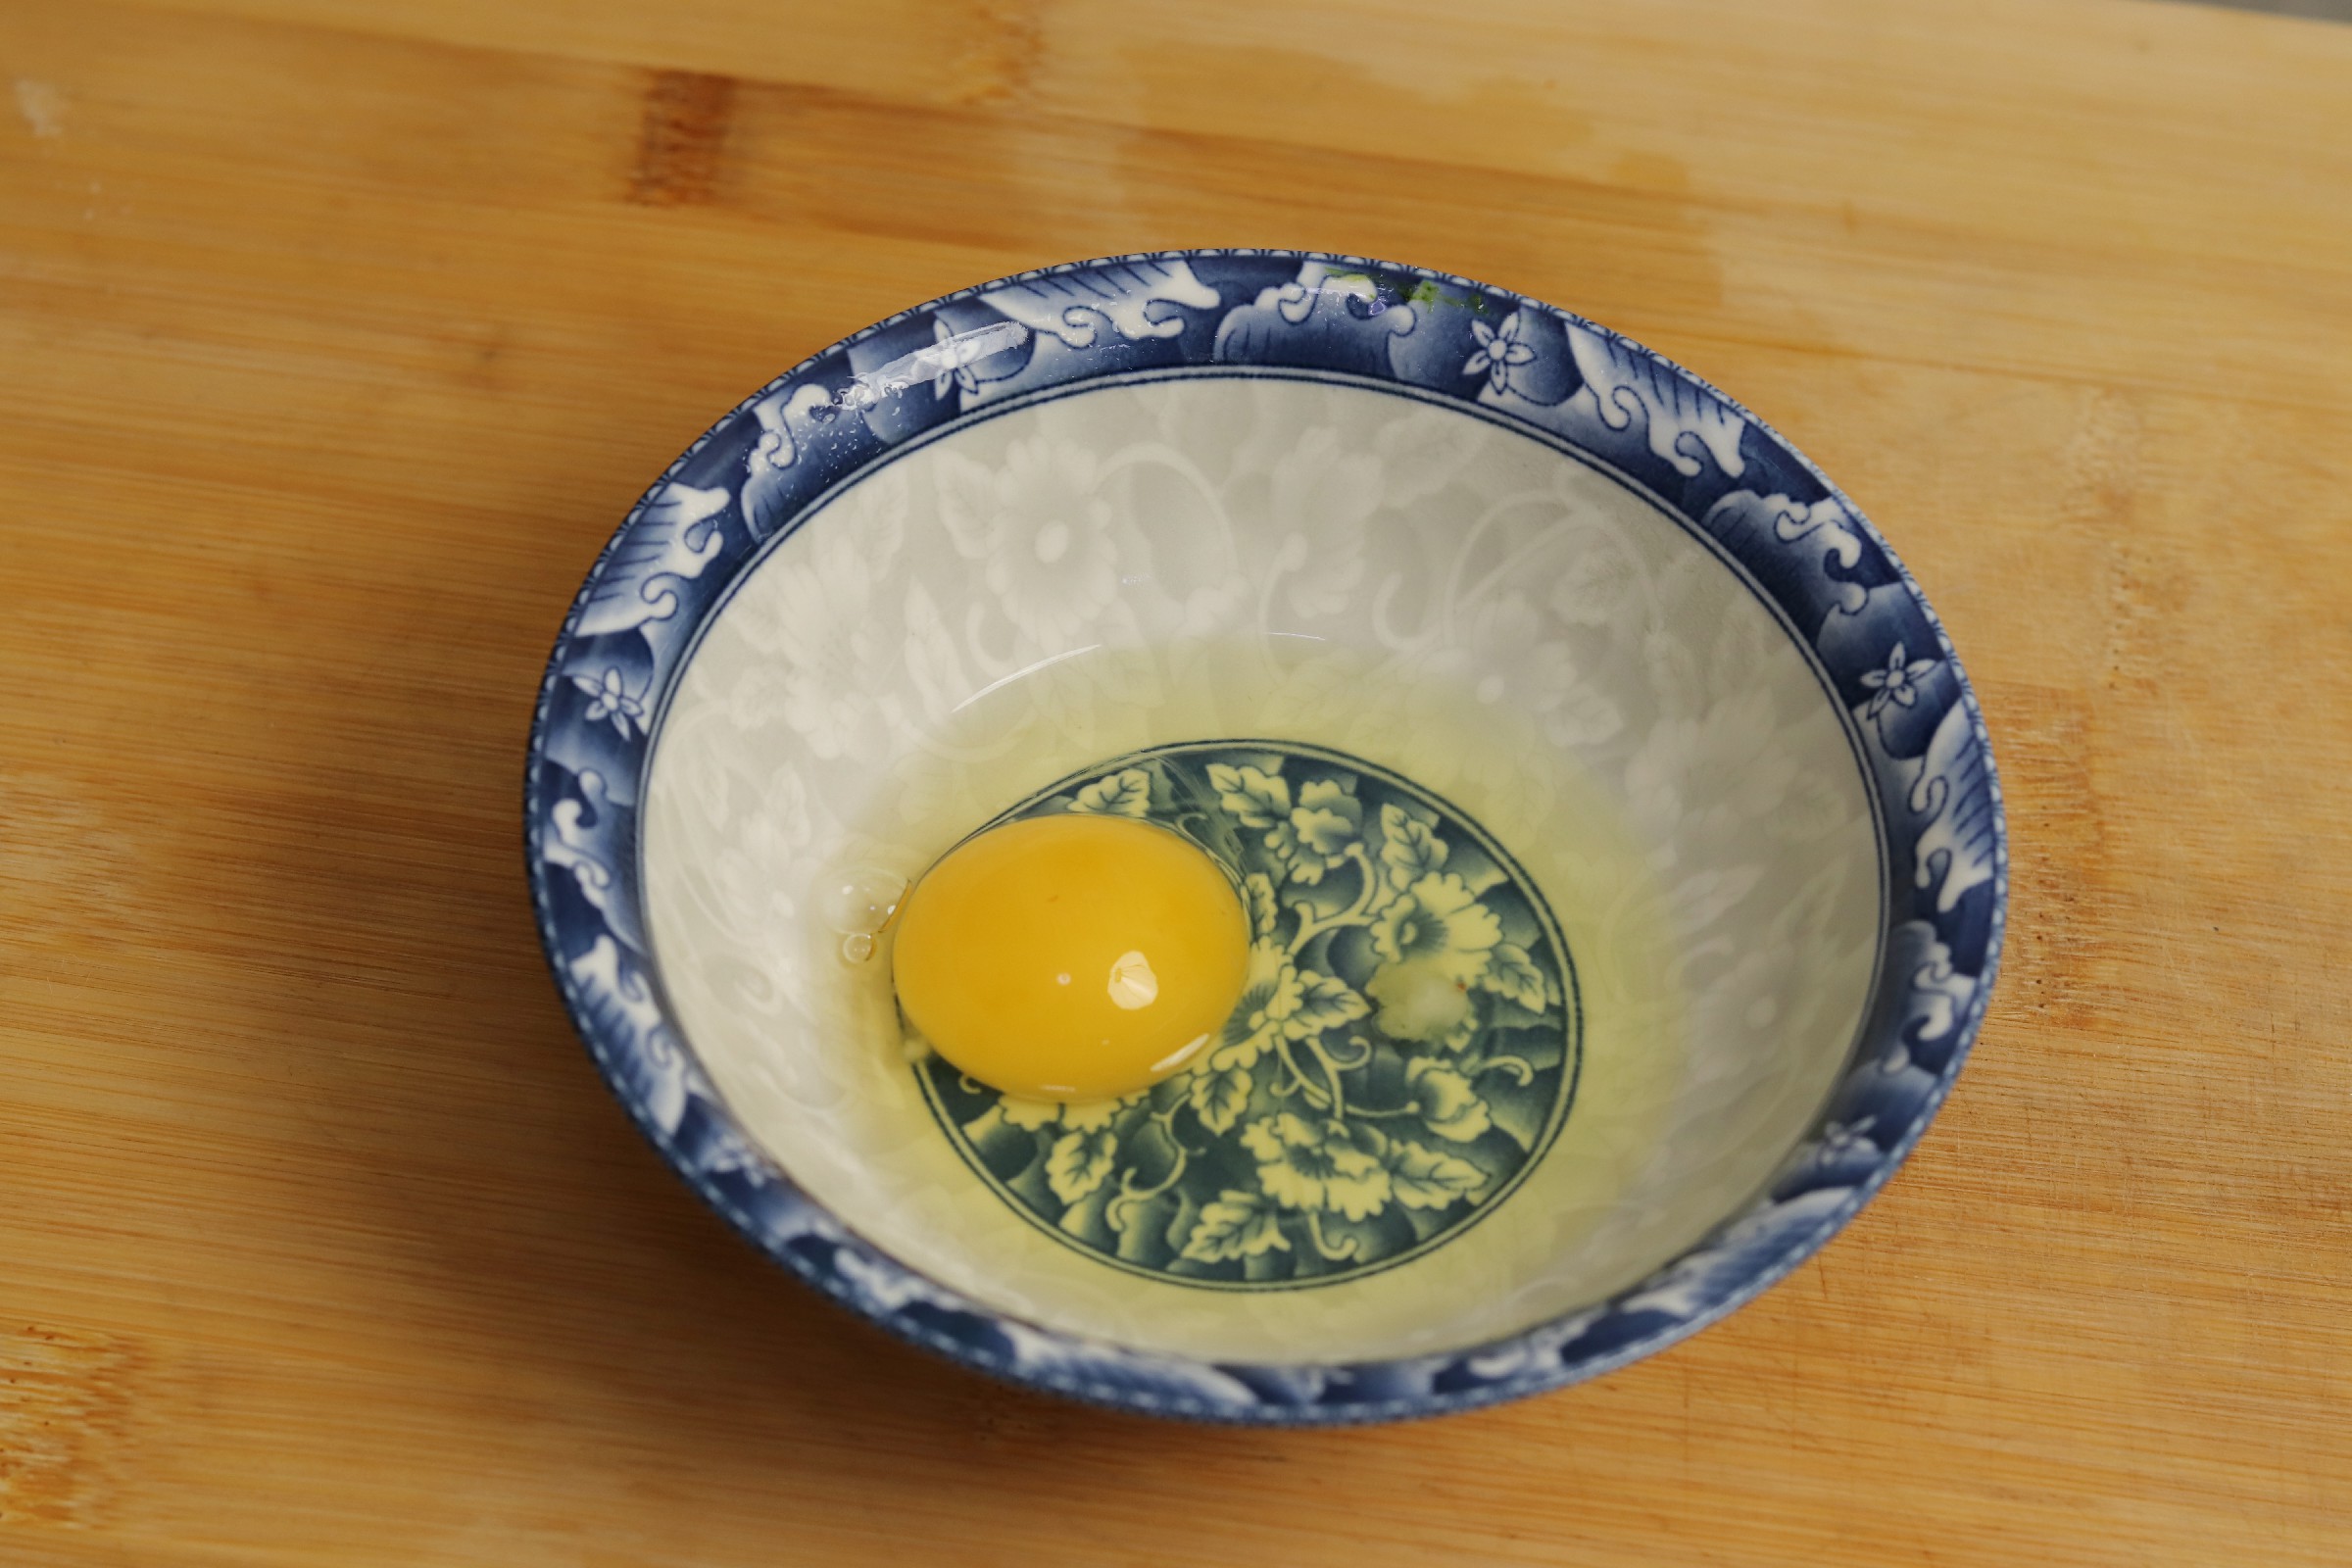 爆浆荷包蛋,爆浆荷包蛋的家常做法 - 美食杰爆浆荷包蛋做法大全